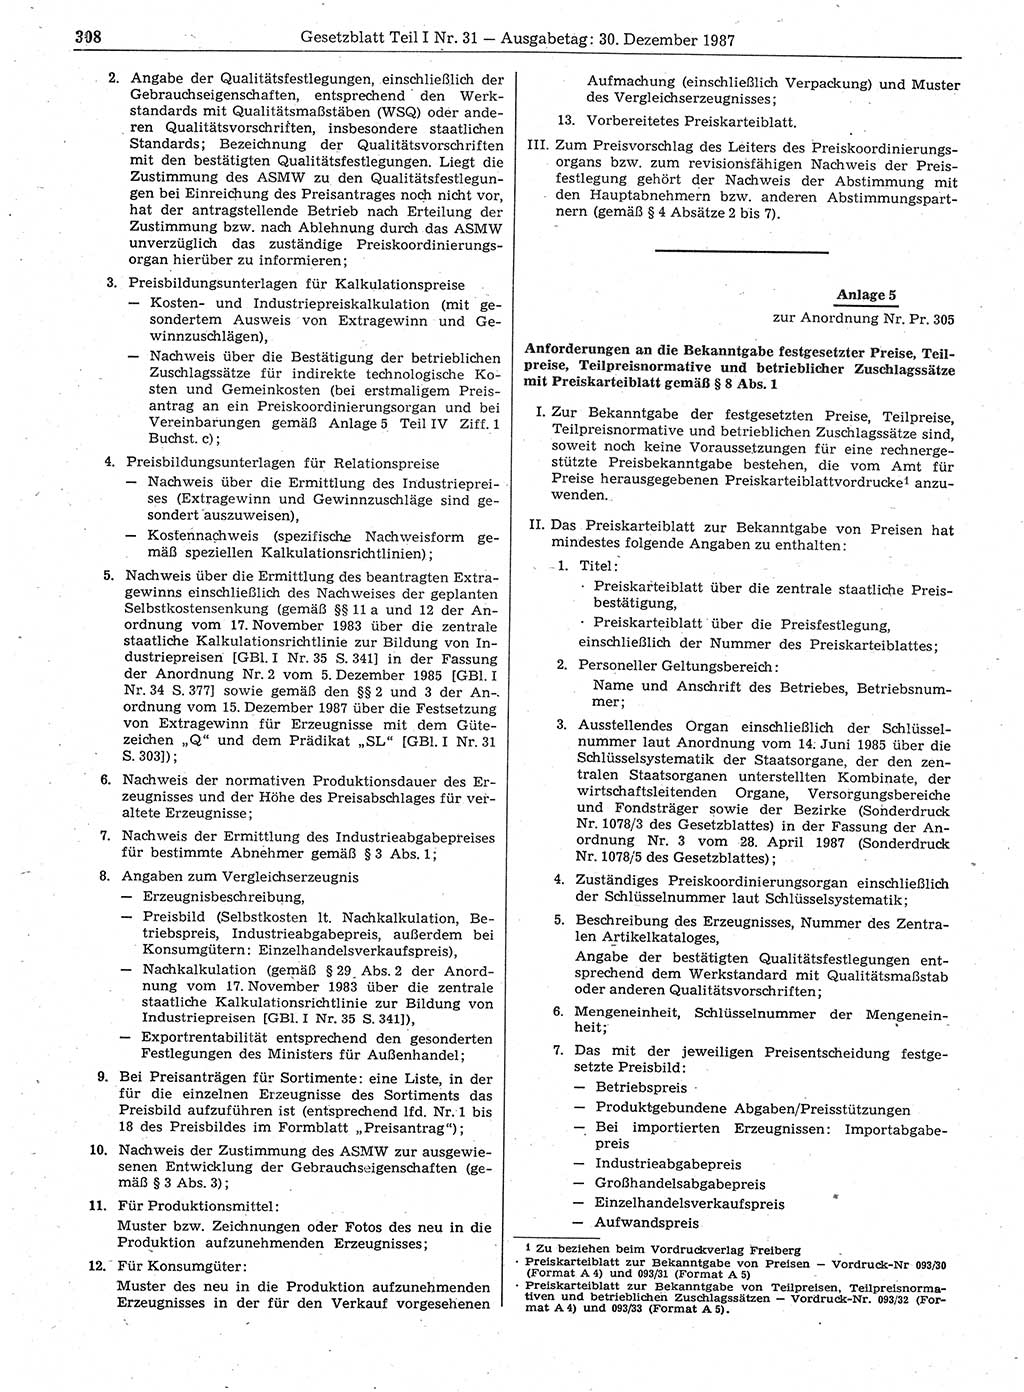 Gesetzblatt (GBl.) der Deutschen Demokratischen Republik (DDR) Teil Ⅰ 1987, Seite 308 (GBl. DDR Ⅰ 1987, S. 308)